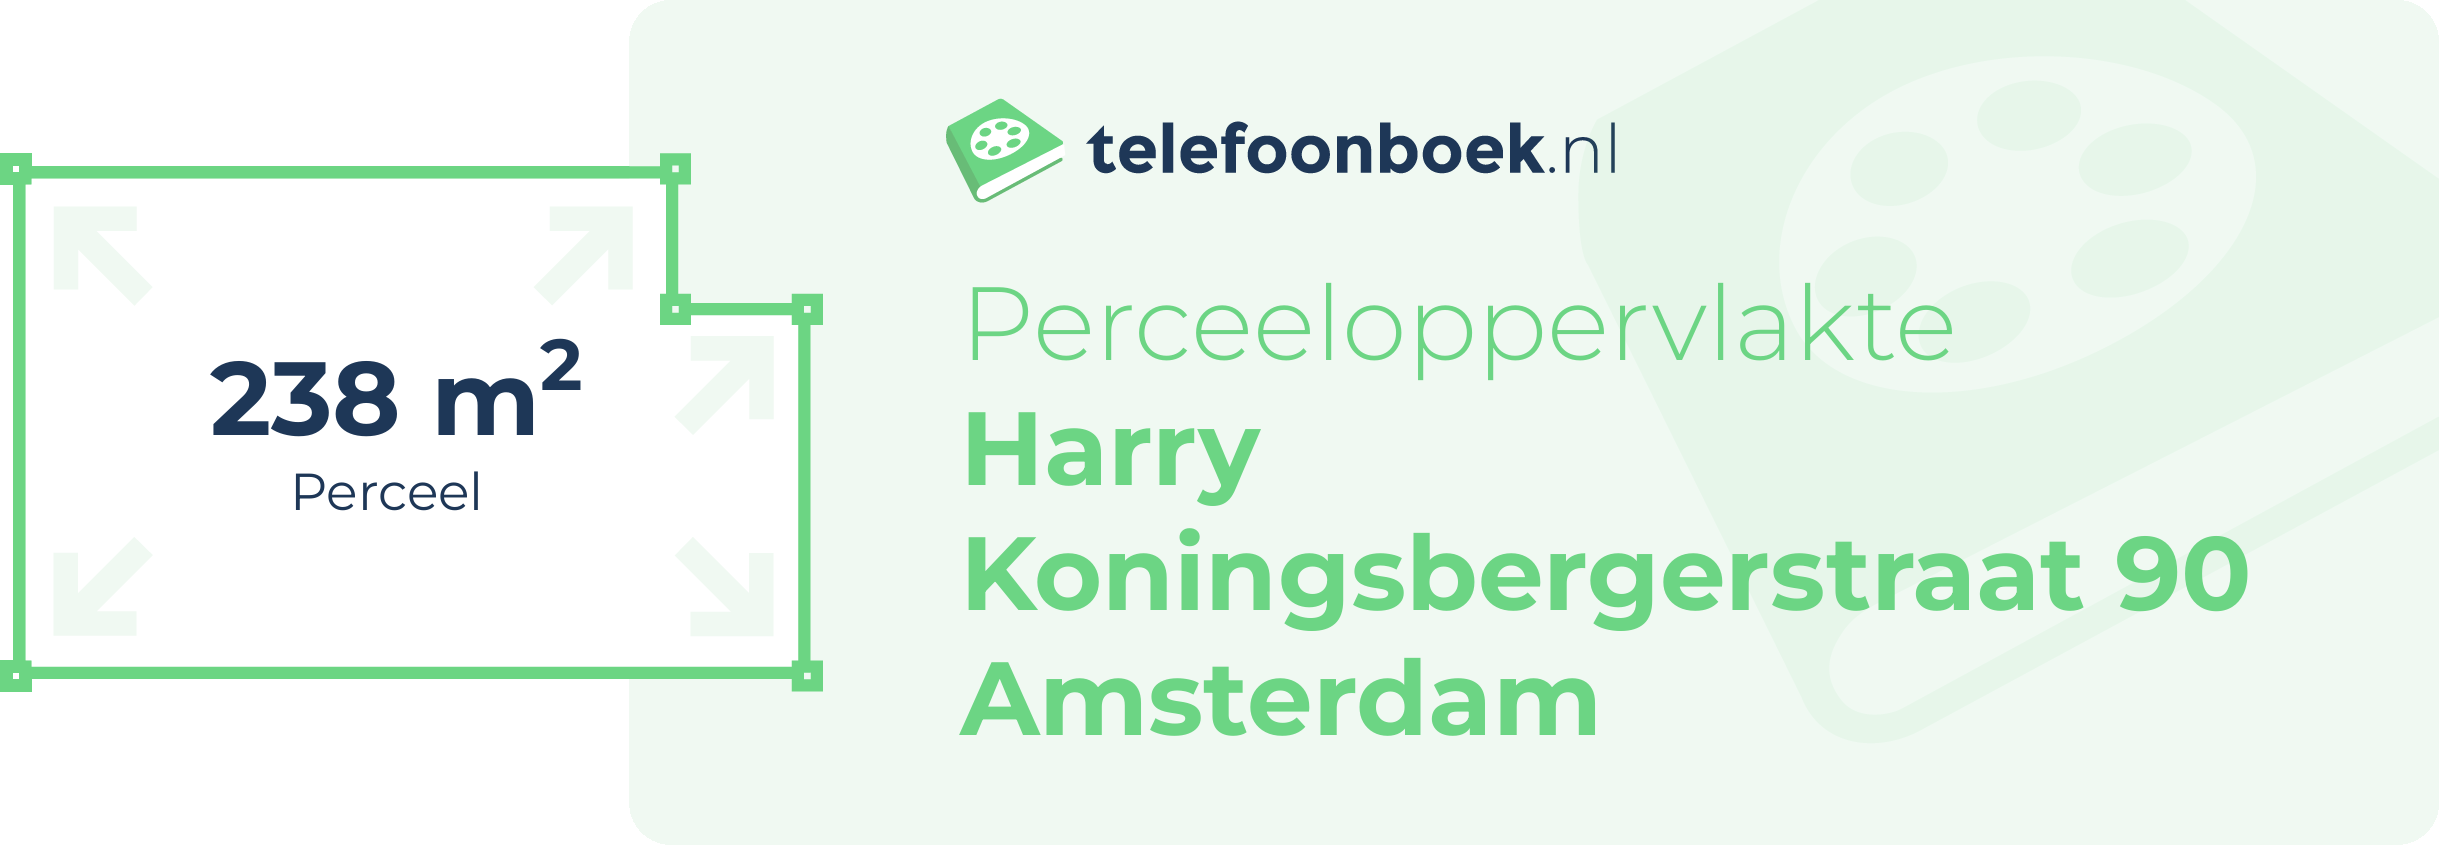 Perceeloppervlakte Harry Koningsbergerstraat 90 Amsterdam